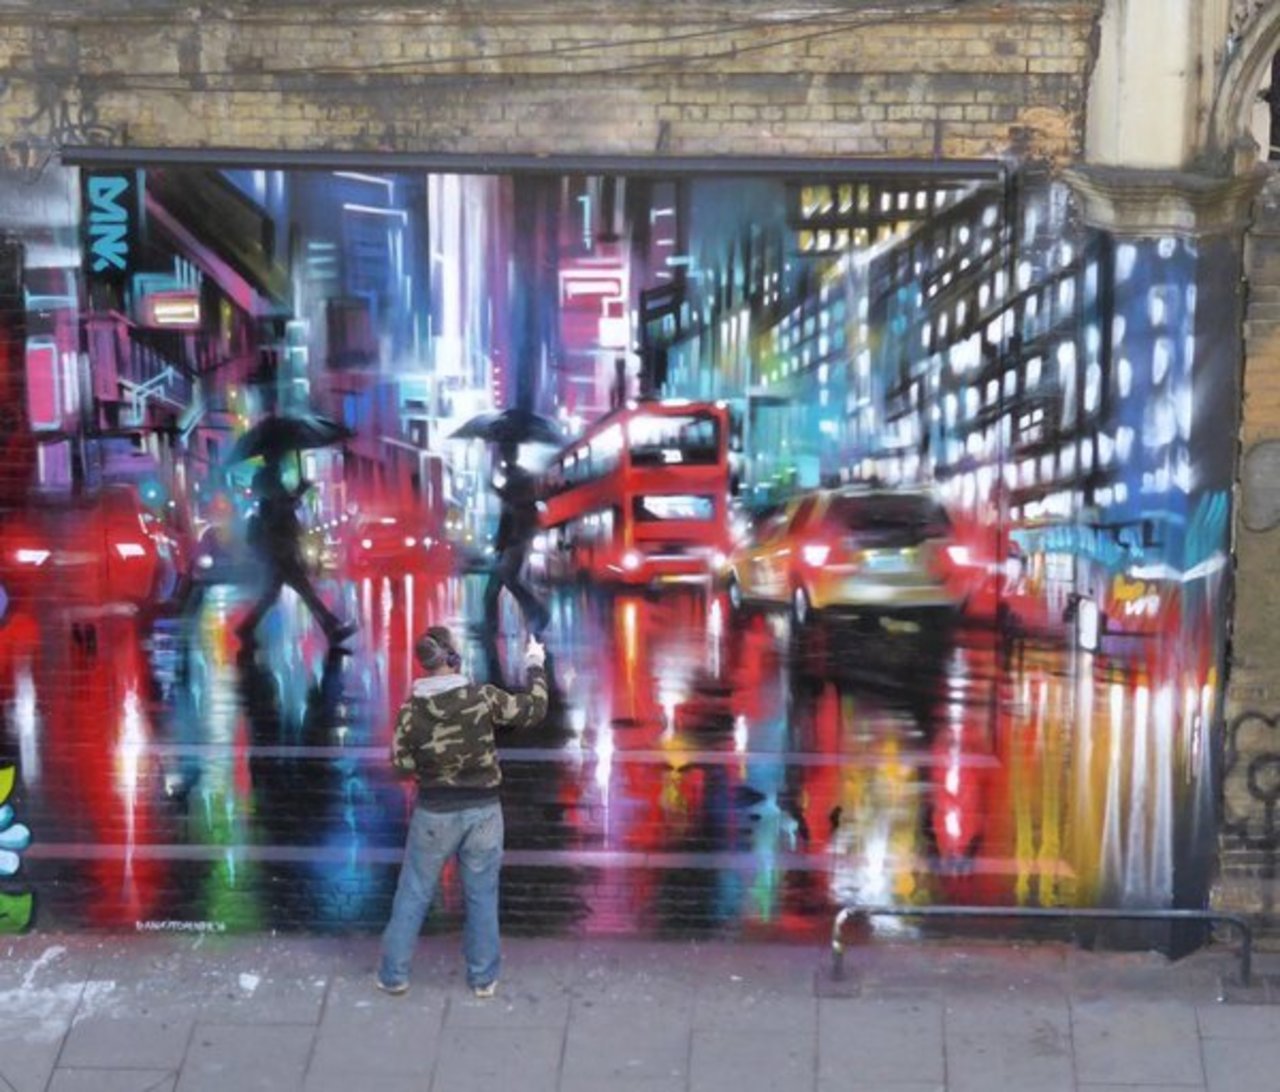 Finished Street Art wall by @DanKitchener  Great Eastern St. London #art #mural #graffiti #streetart https://t.co/d8jkGCZsWd